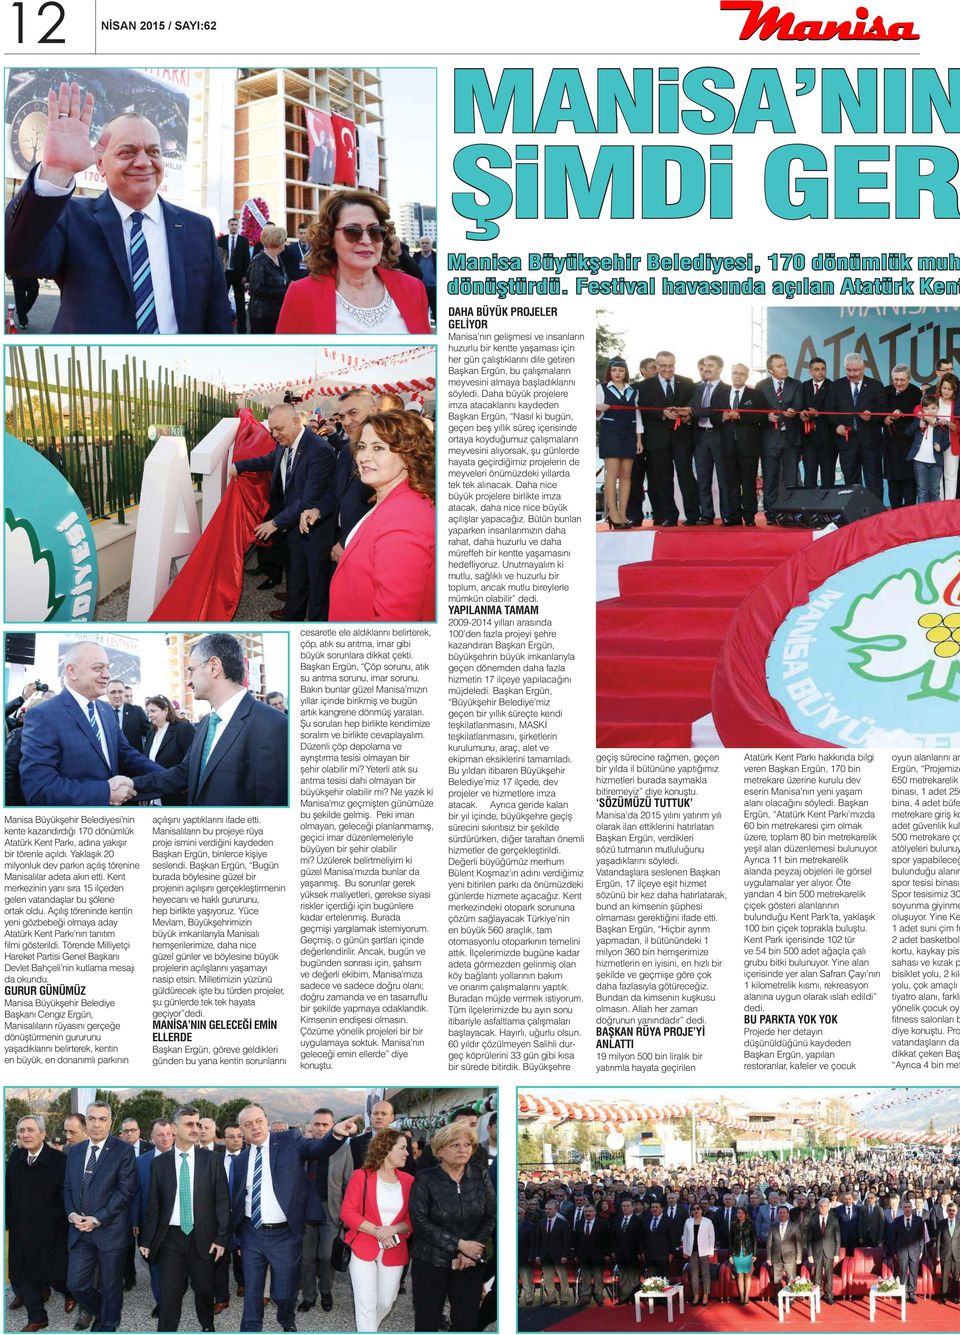 Açılış töreninde kentin yeni gözbebeği olmaya aday Atatürk Kent Parkı nın tanıtım ilmi gösterildi. Törende Milliyetçi Hareket Partisi Genel Başkanı Devlet Bahçeli nin kutlama mesajı da okundu.